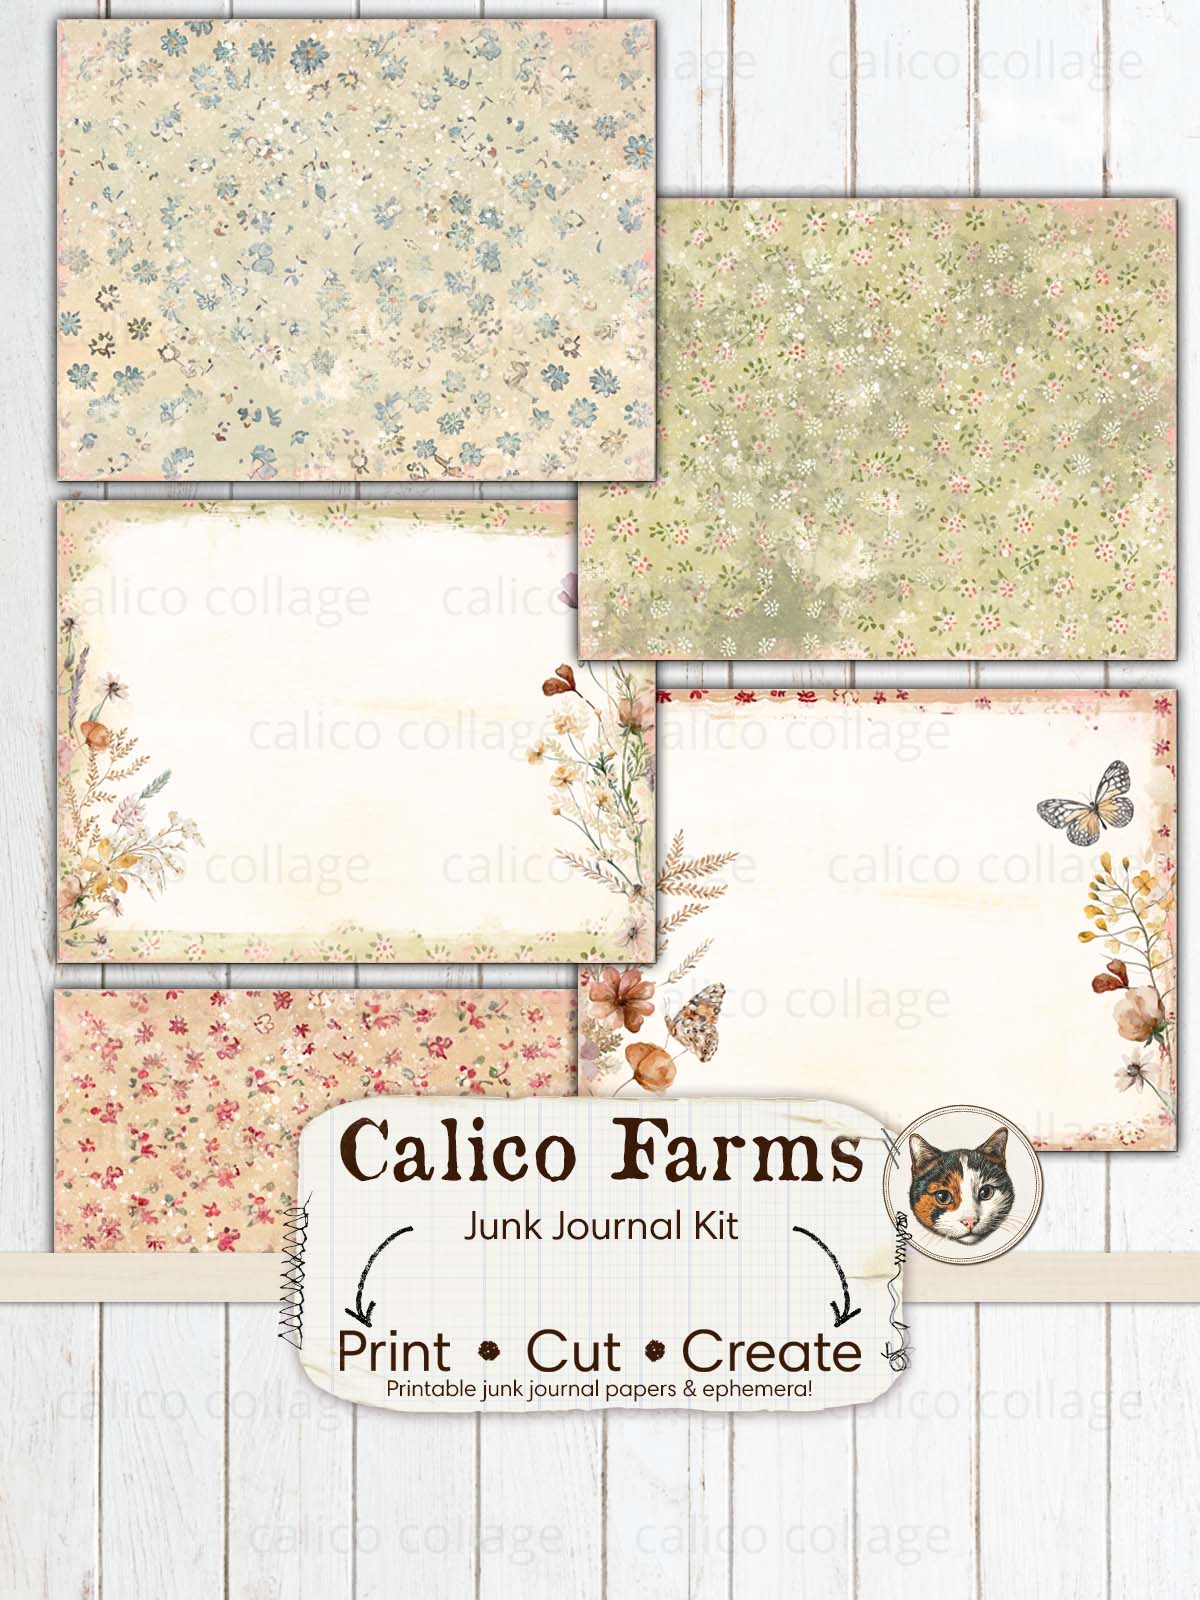 Calico Farms Junk Journal Kit